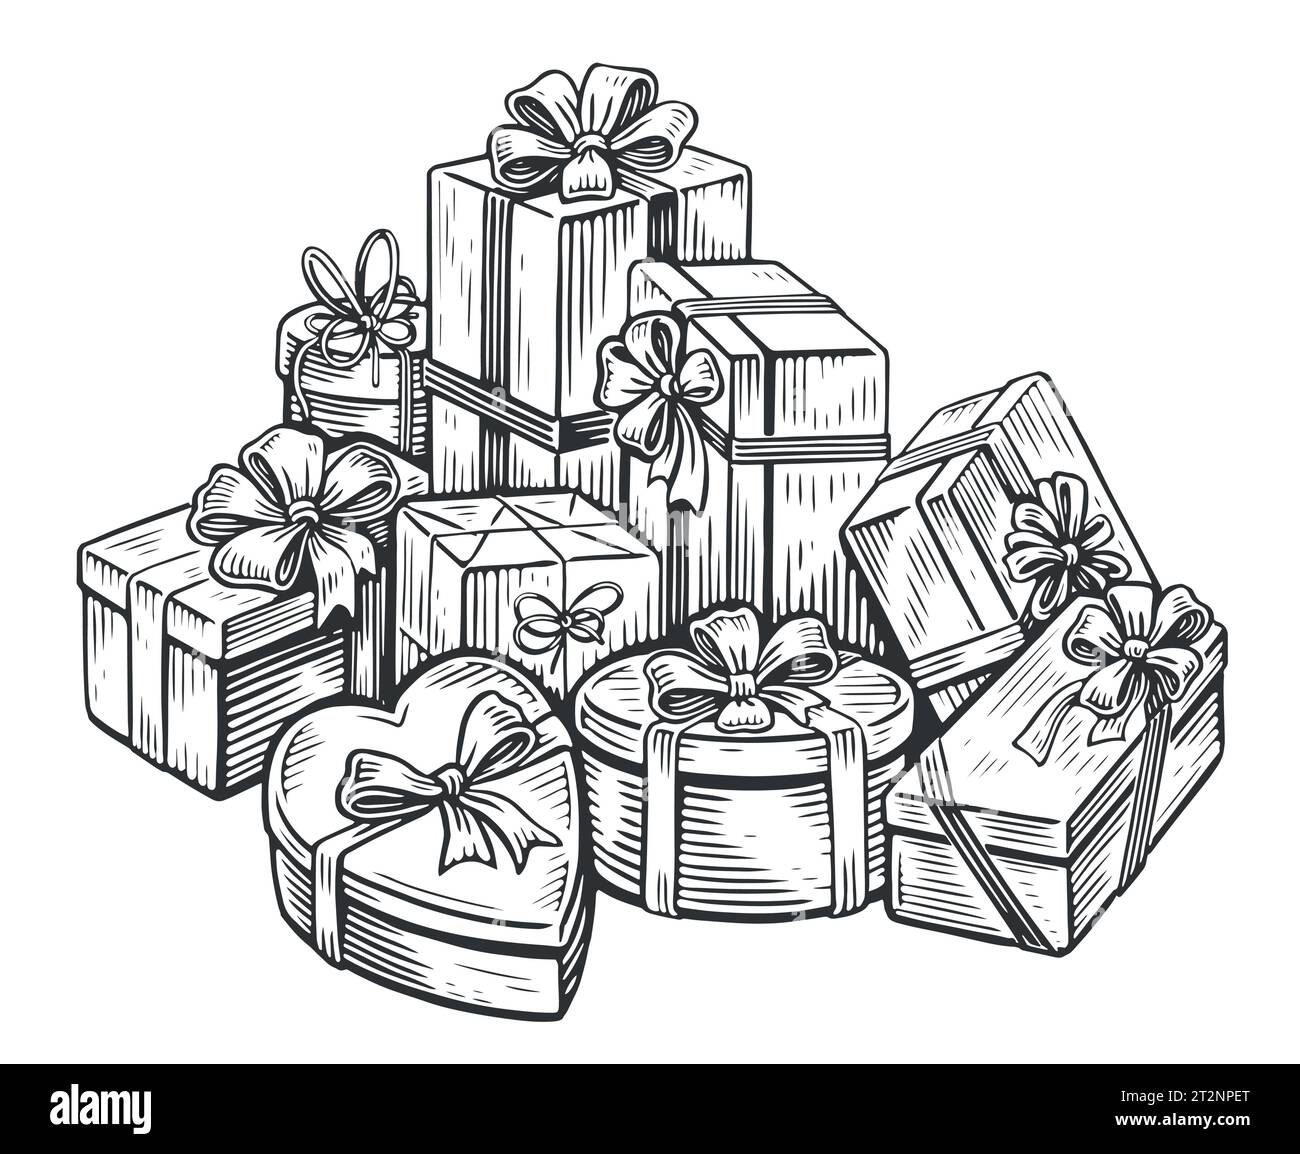 Großer Haufen Geschenkboxen aus festlichem Geschenkpapier mit Schleife und Schleifen. Weihnachts- und Weihnachtsgeschenke. Skizzenvektor Stock Vektor